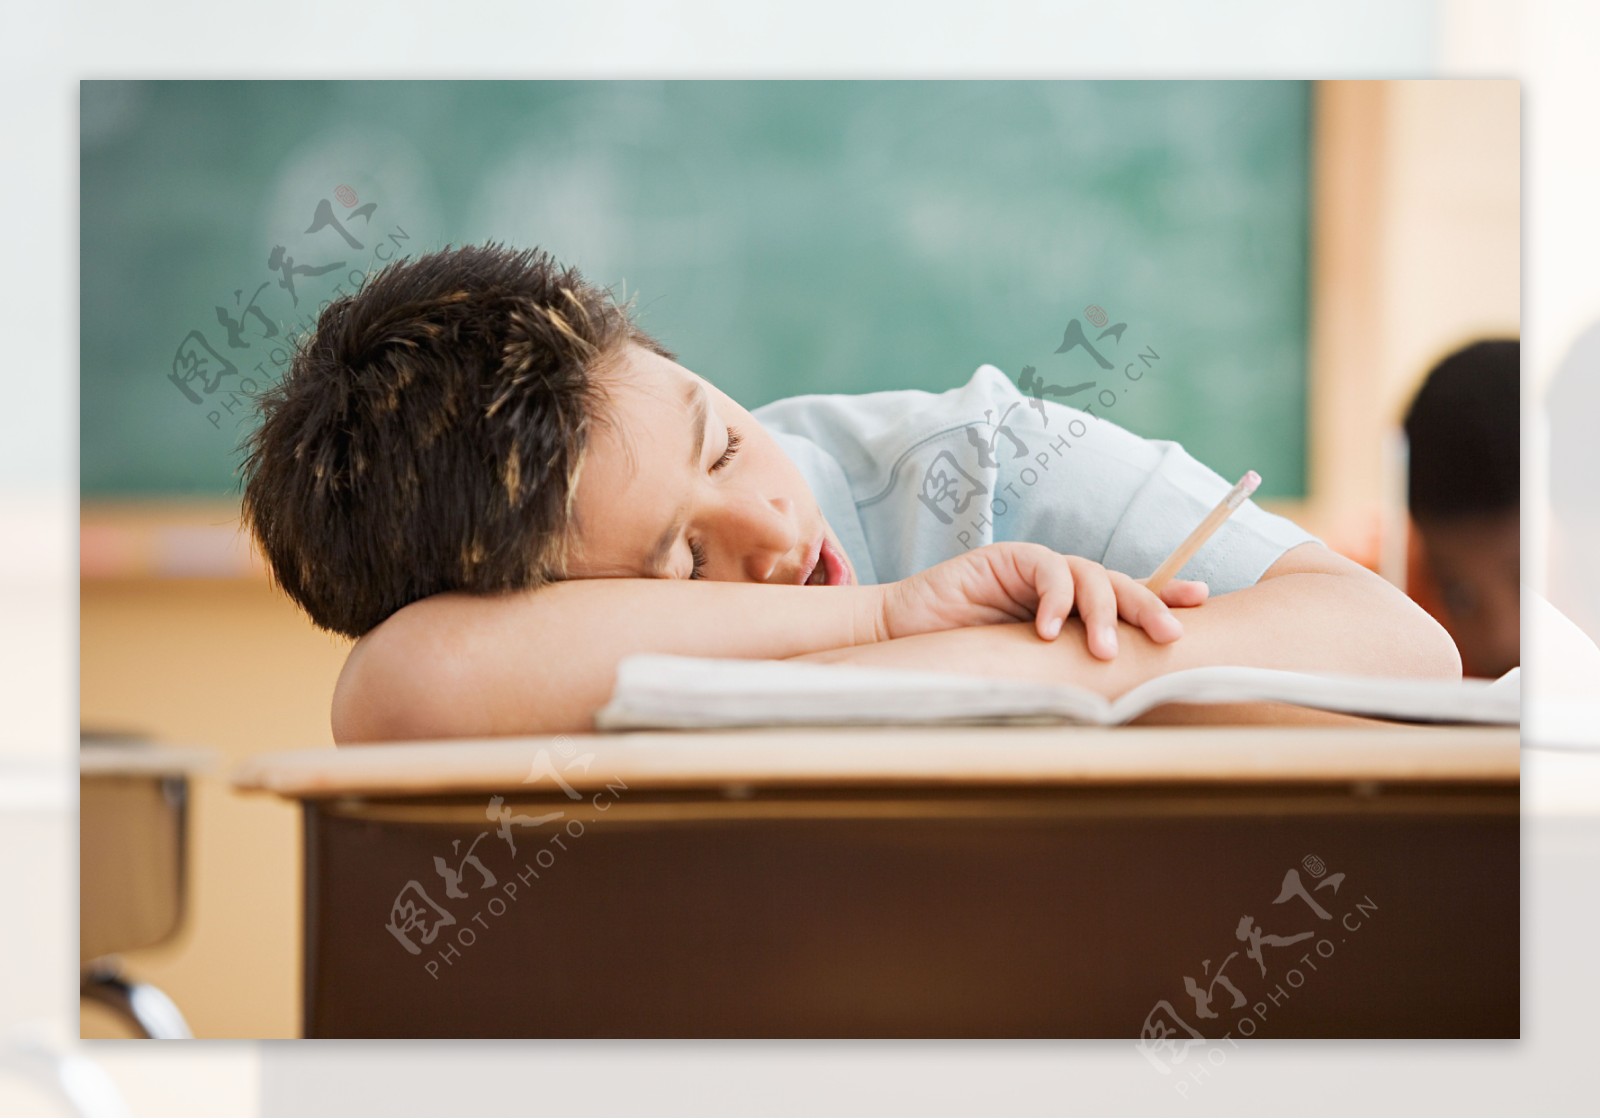 趴在课桌上睡觉的小男孩图片